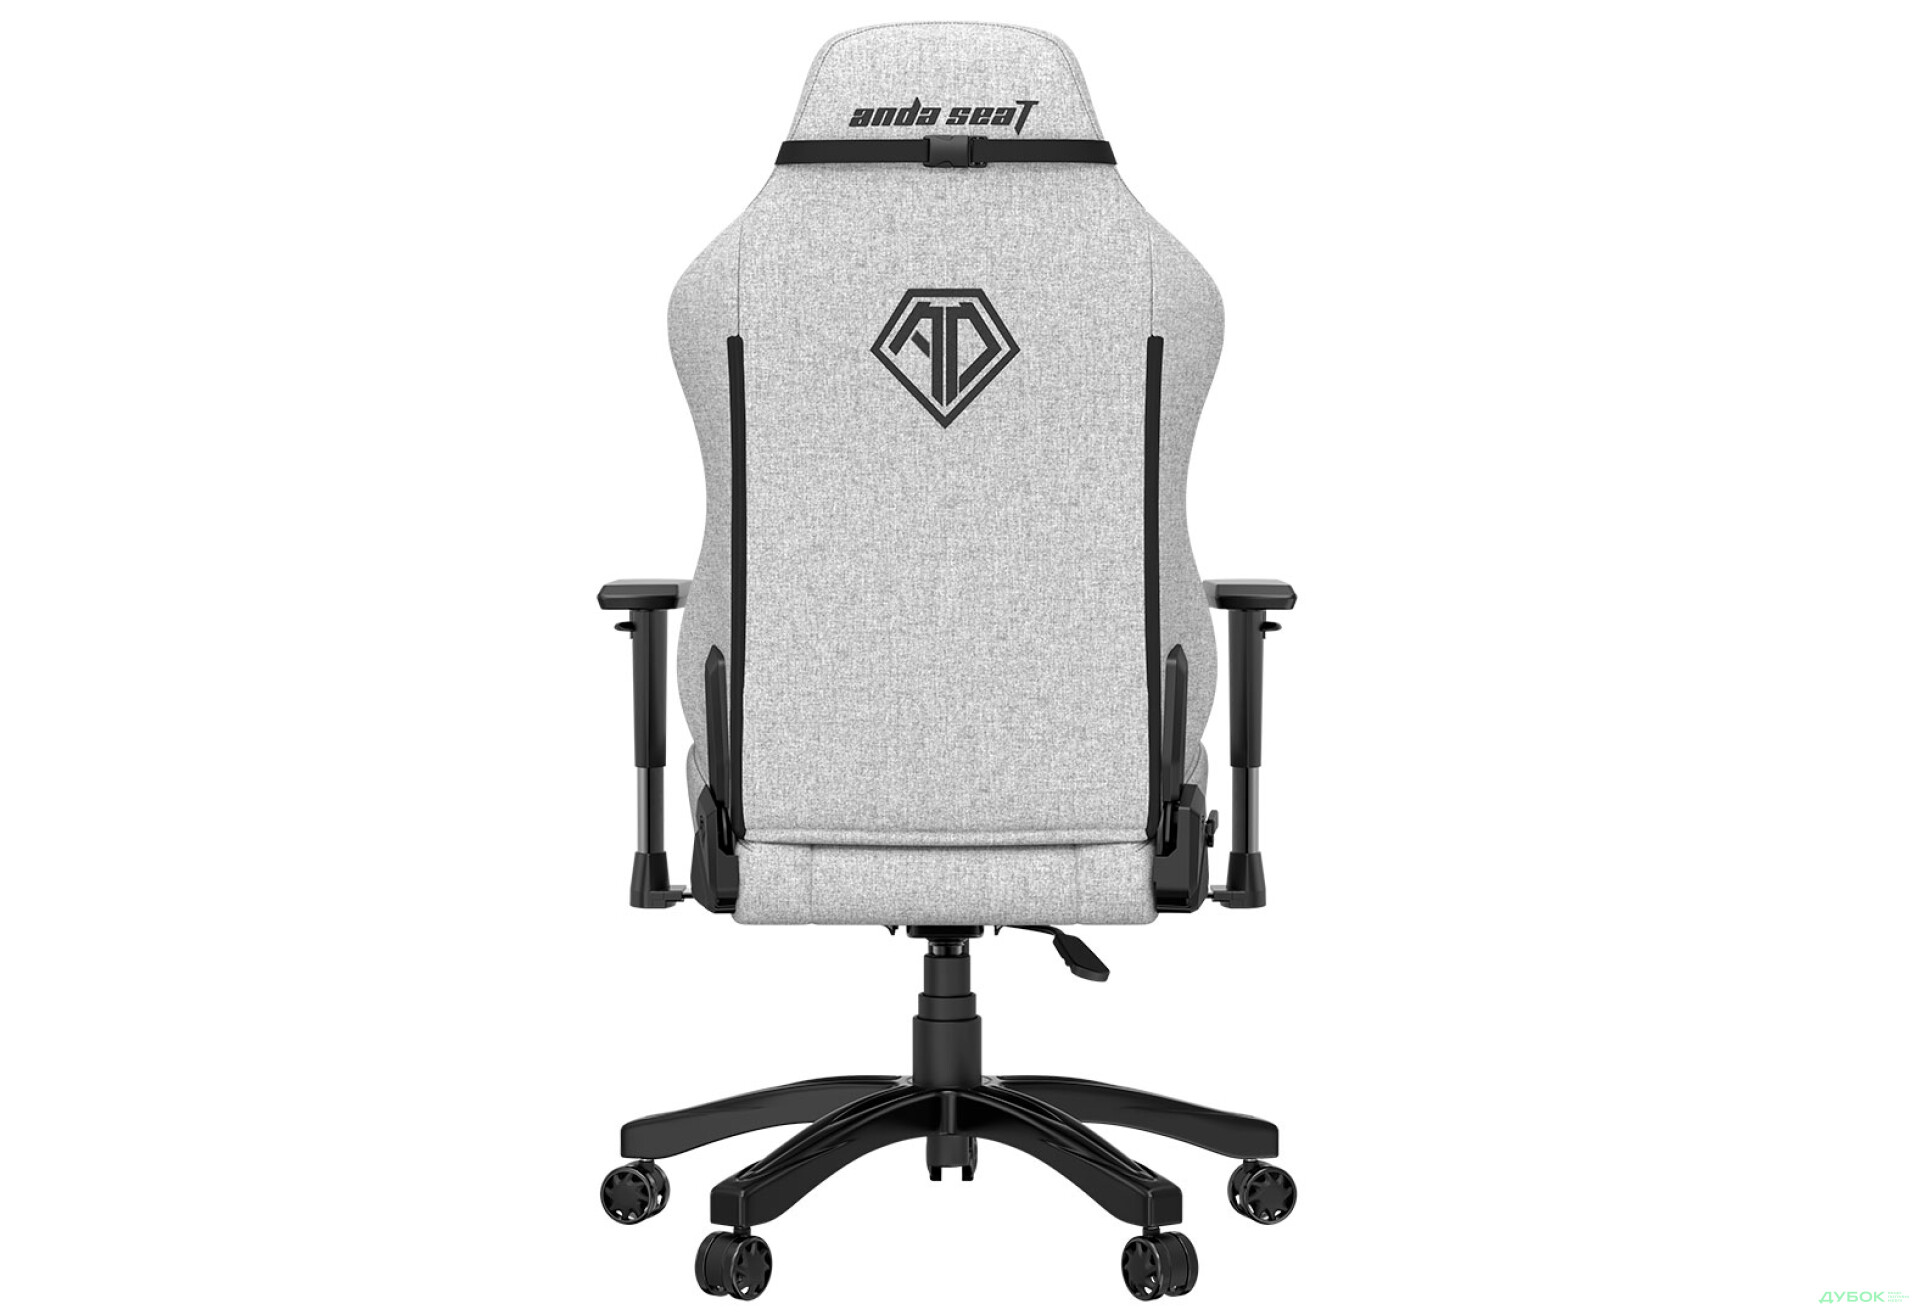 Фото 4 - Компьютерное кресло Anda Seat Phantom 3 70x55x134 см игровое, серое